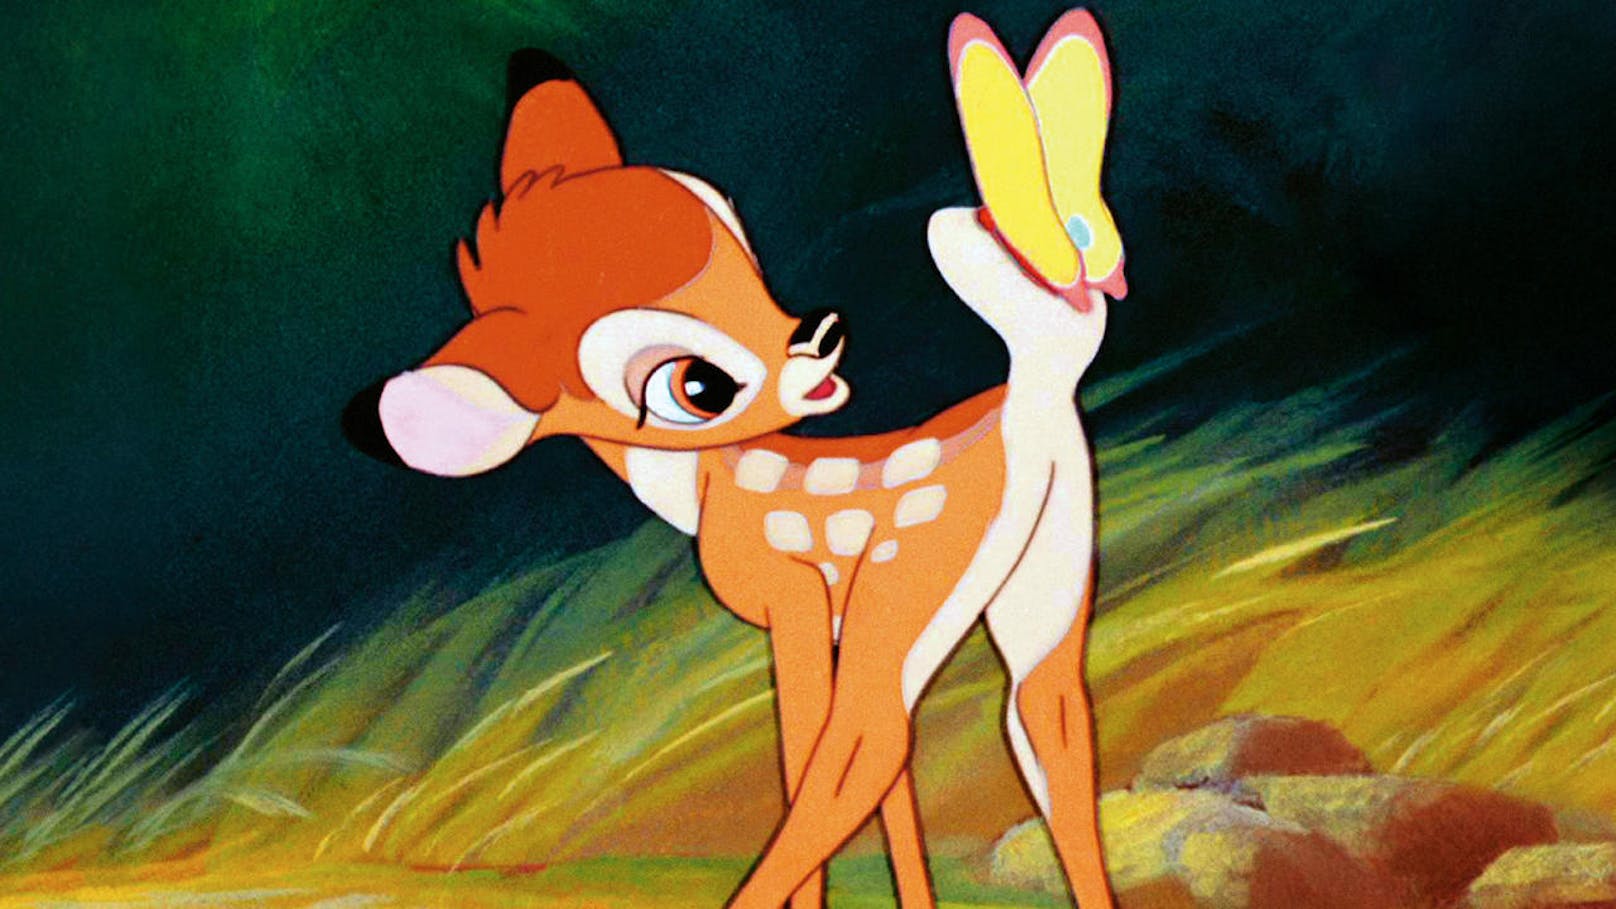 Disneys "Bambi" erlebte 1942 sein Leinwand-Debüt. Der Film trug die persönliche Handschrift <b>Walt Disneys </b>und zählte zu den beliebtesten Werken des großen Animationskünstlers.